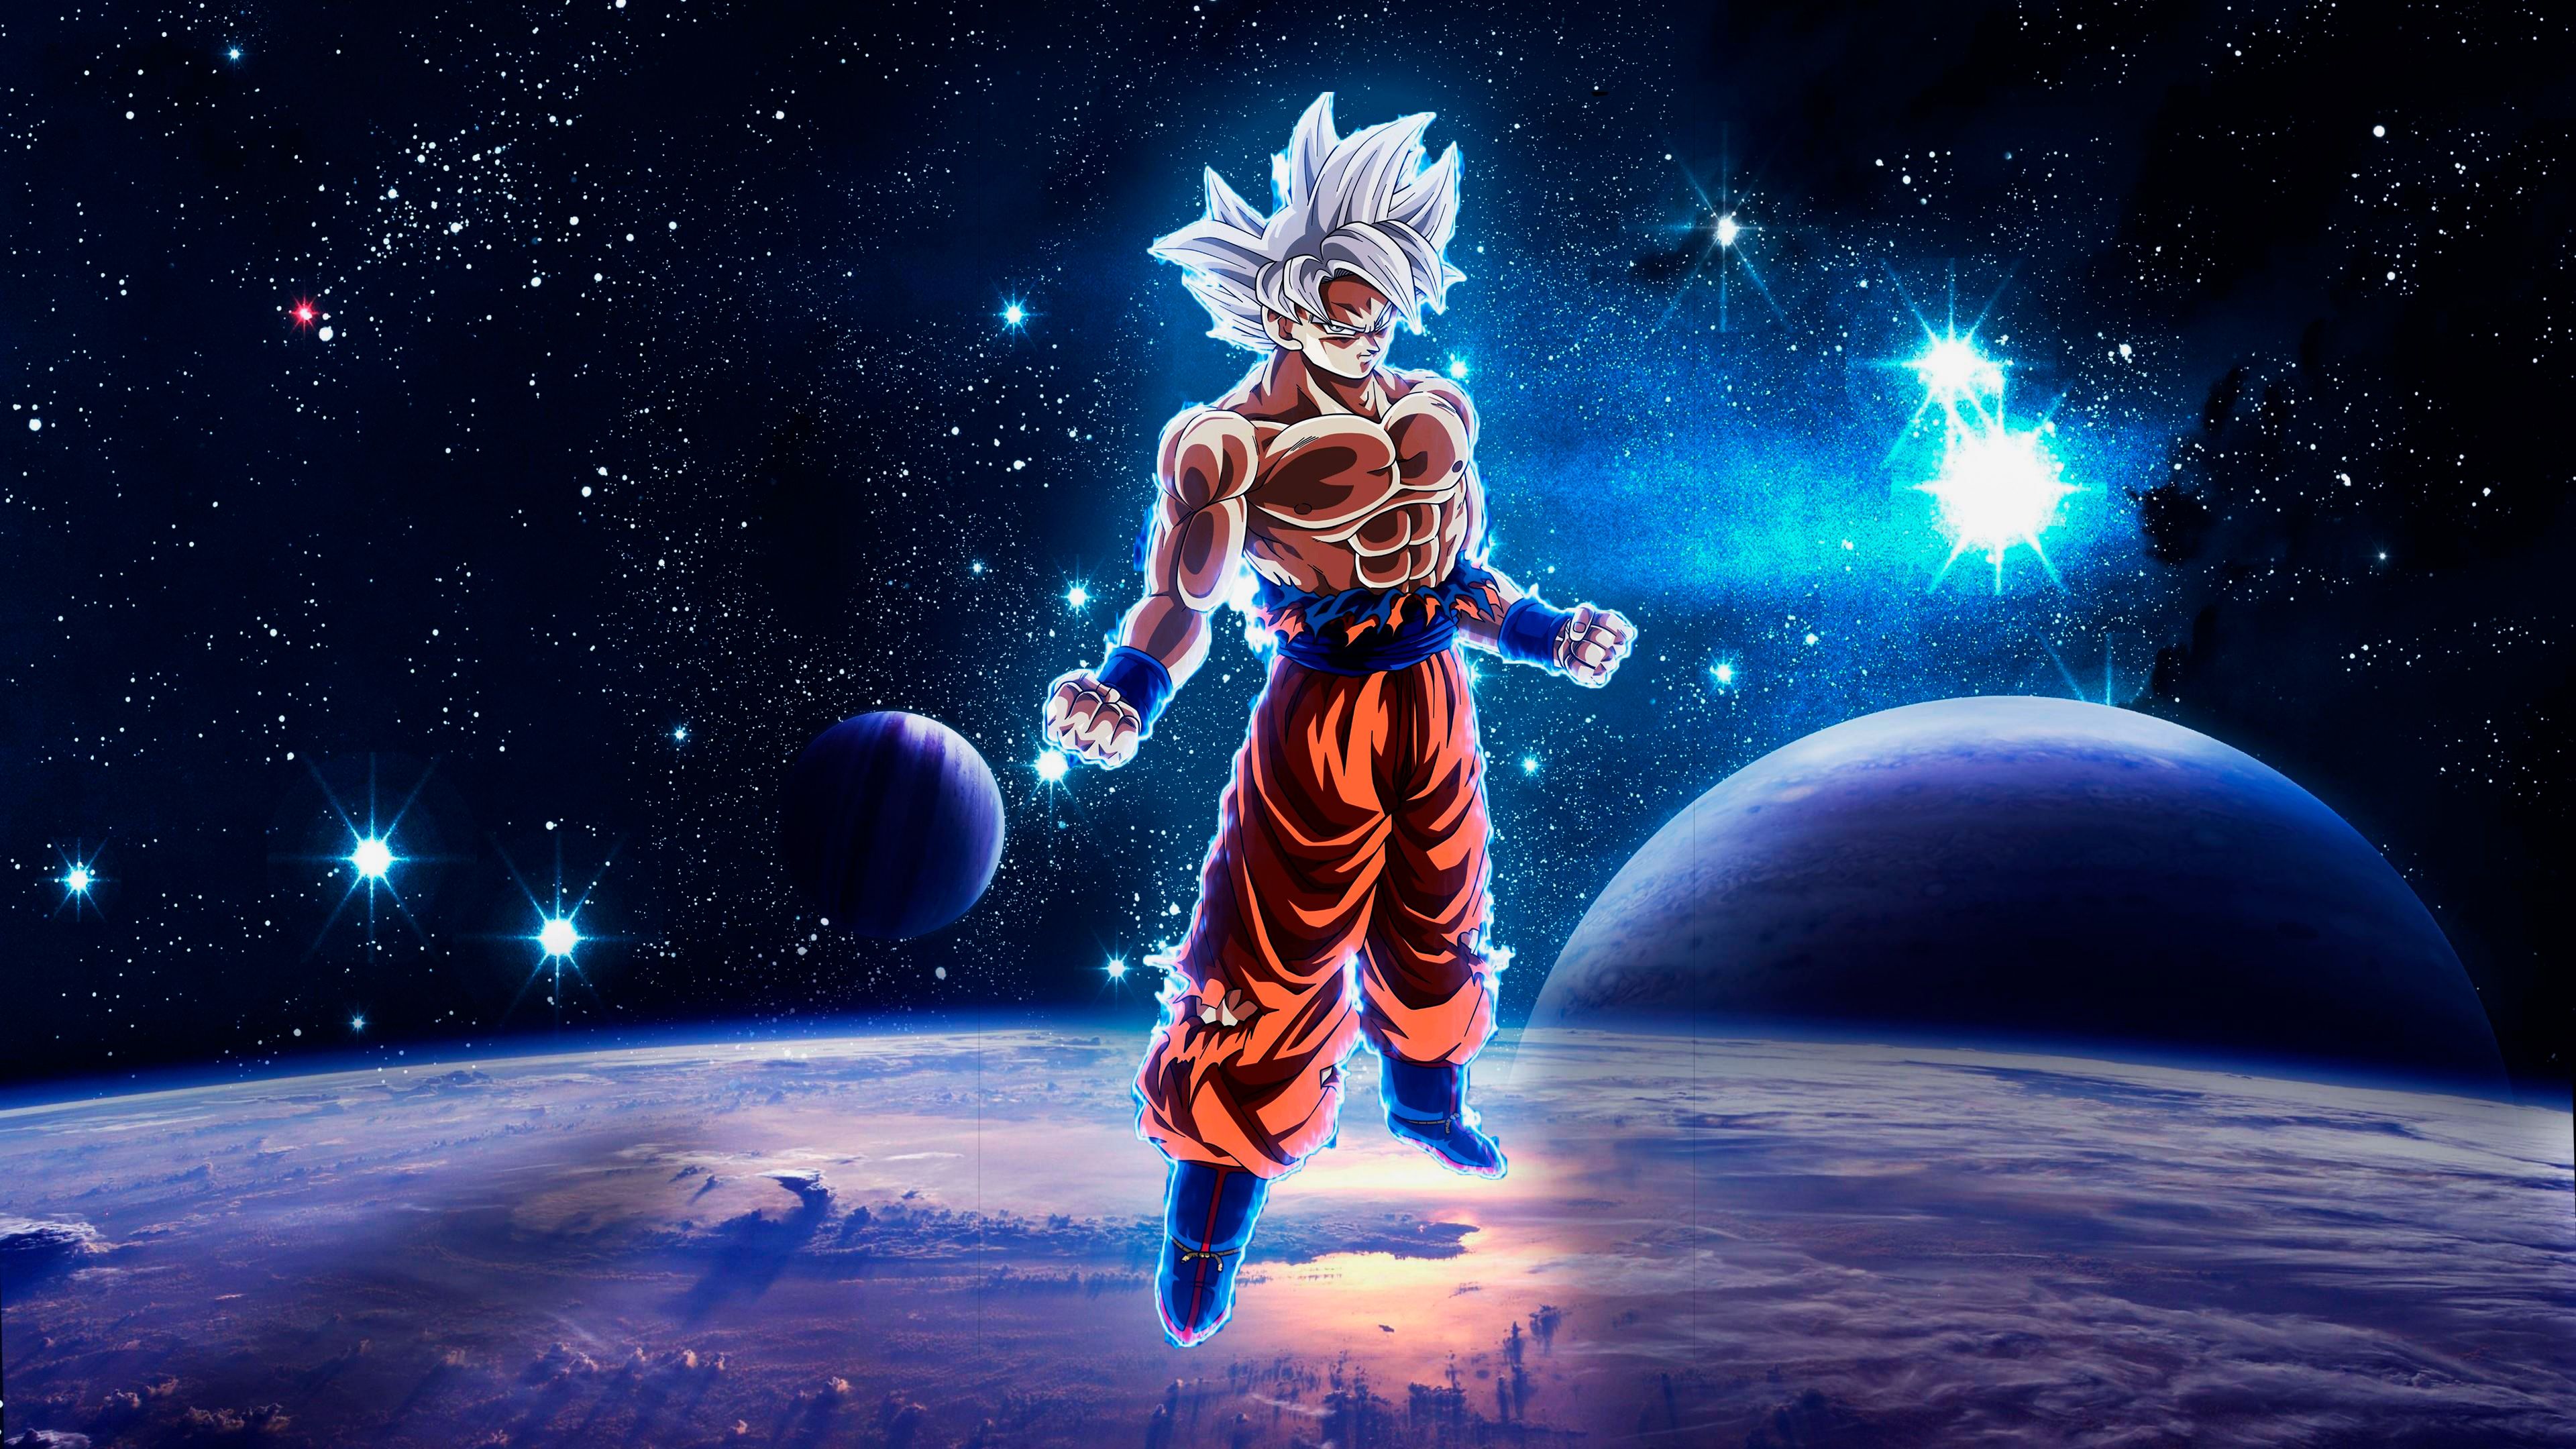 Goku - Là nhân vật sở hữu sức mạnh siêu nhiên, đầy nghị lực và can đảm. Hãy đồng hành cùng Goku và xem anh ấy truyền cảm hứng với những chiến công tuyệt vời.